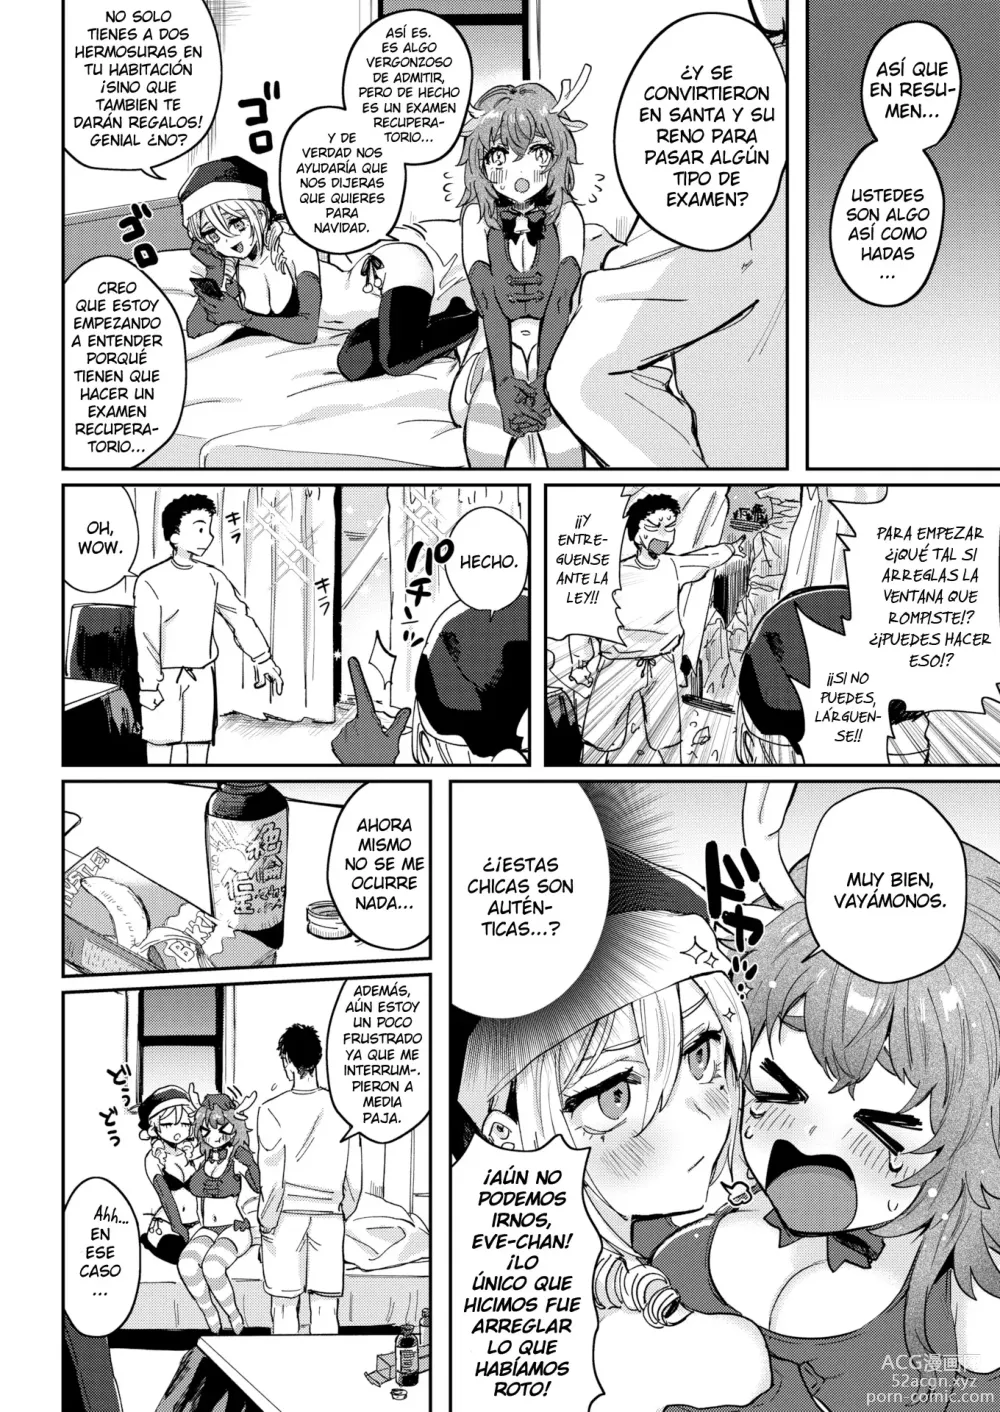 Page 5 of manga Santa claus atrasado